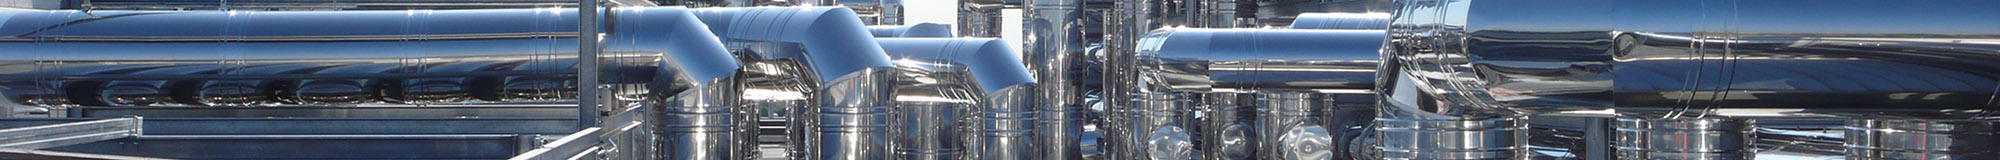 Отводы штампованные для трубопроводов пара и горячей воды ТЭС